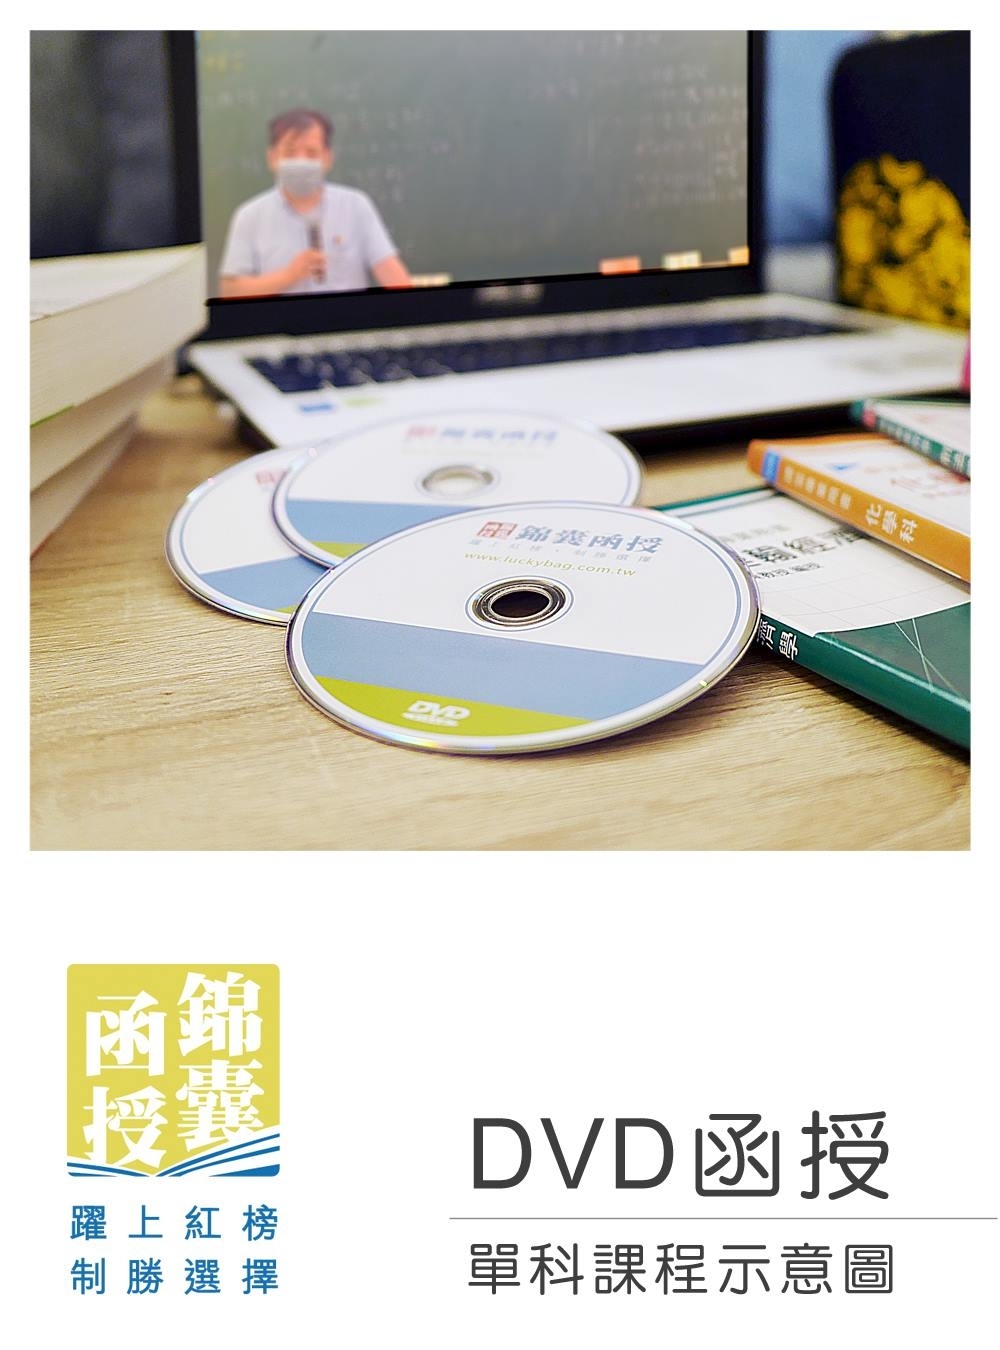 【DVD函授】刑法(含總則/分則)-單科課程(111版)